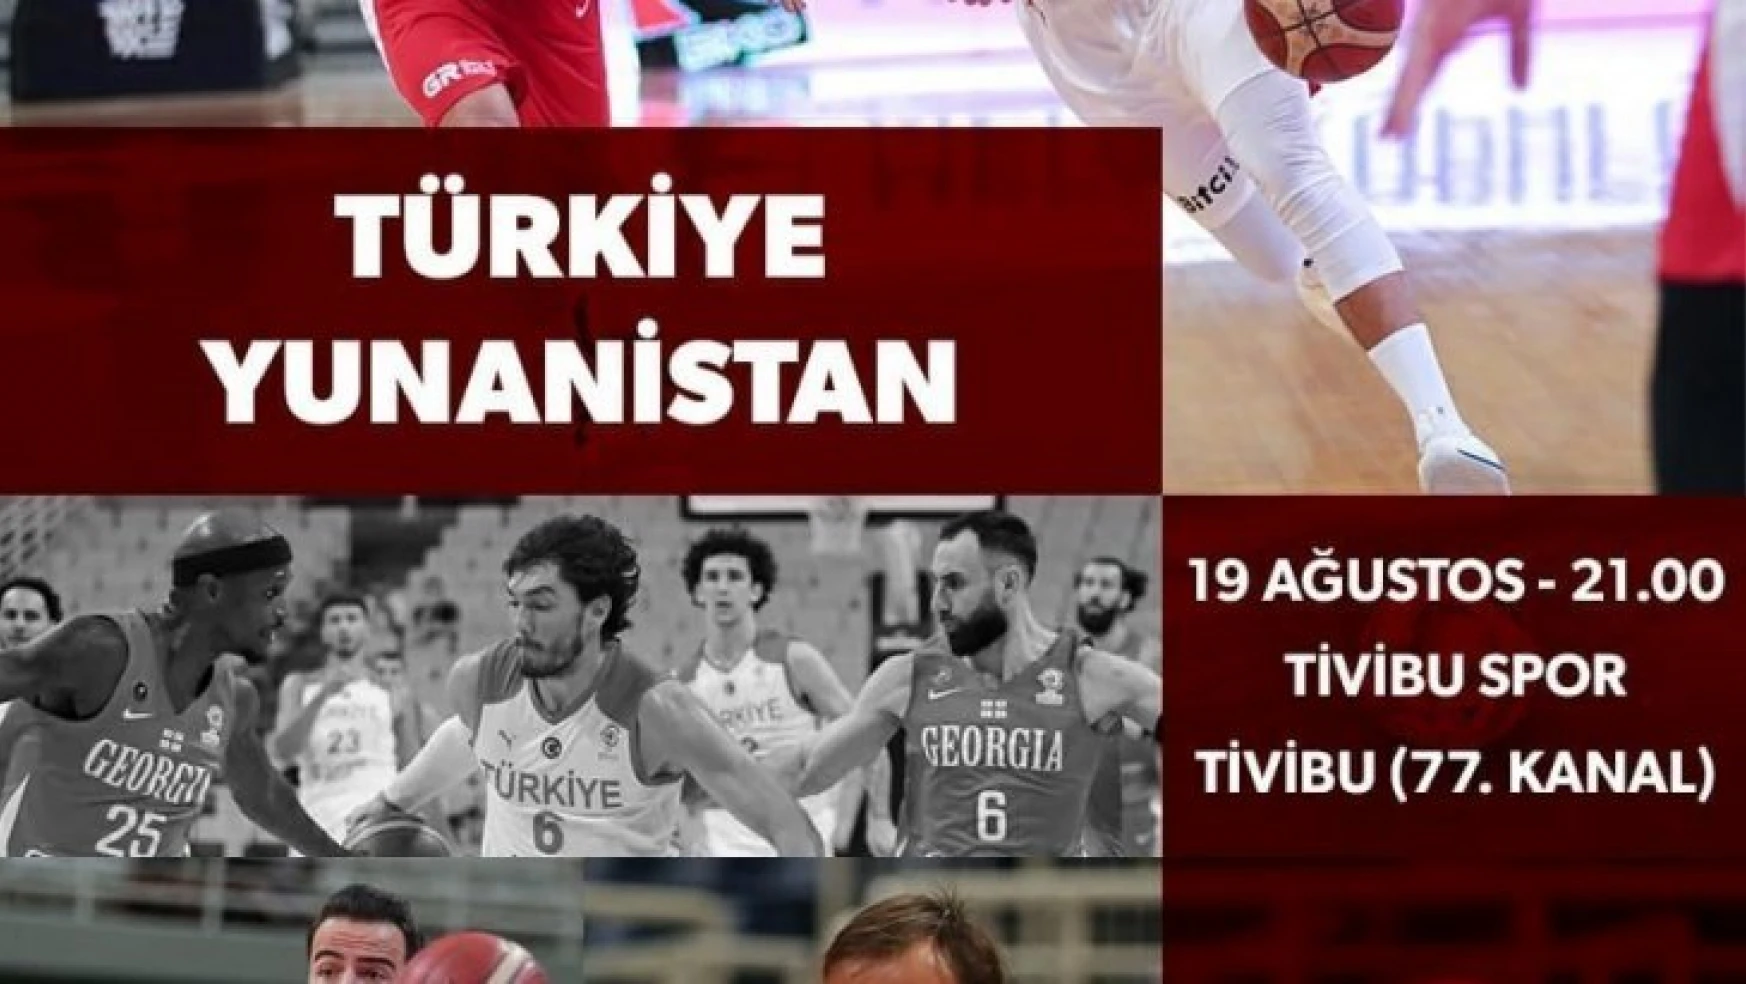 Türkiye-Yunanistan basketbol maçı Tivibu Spor'da yayınlanacak